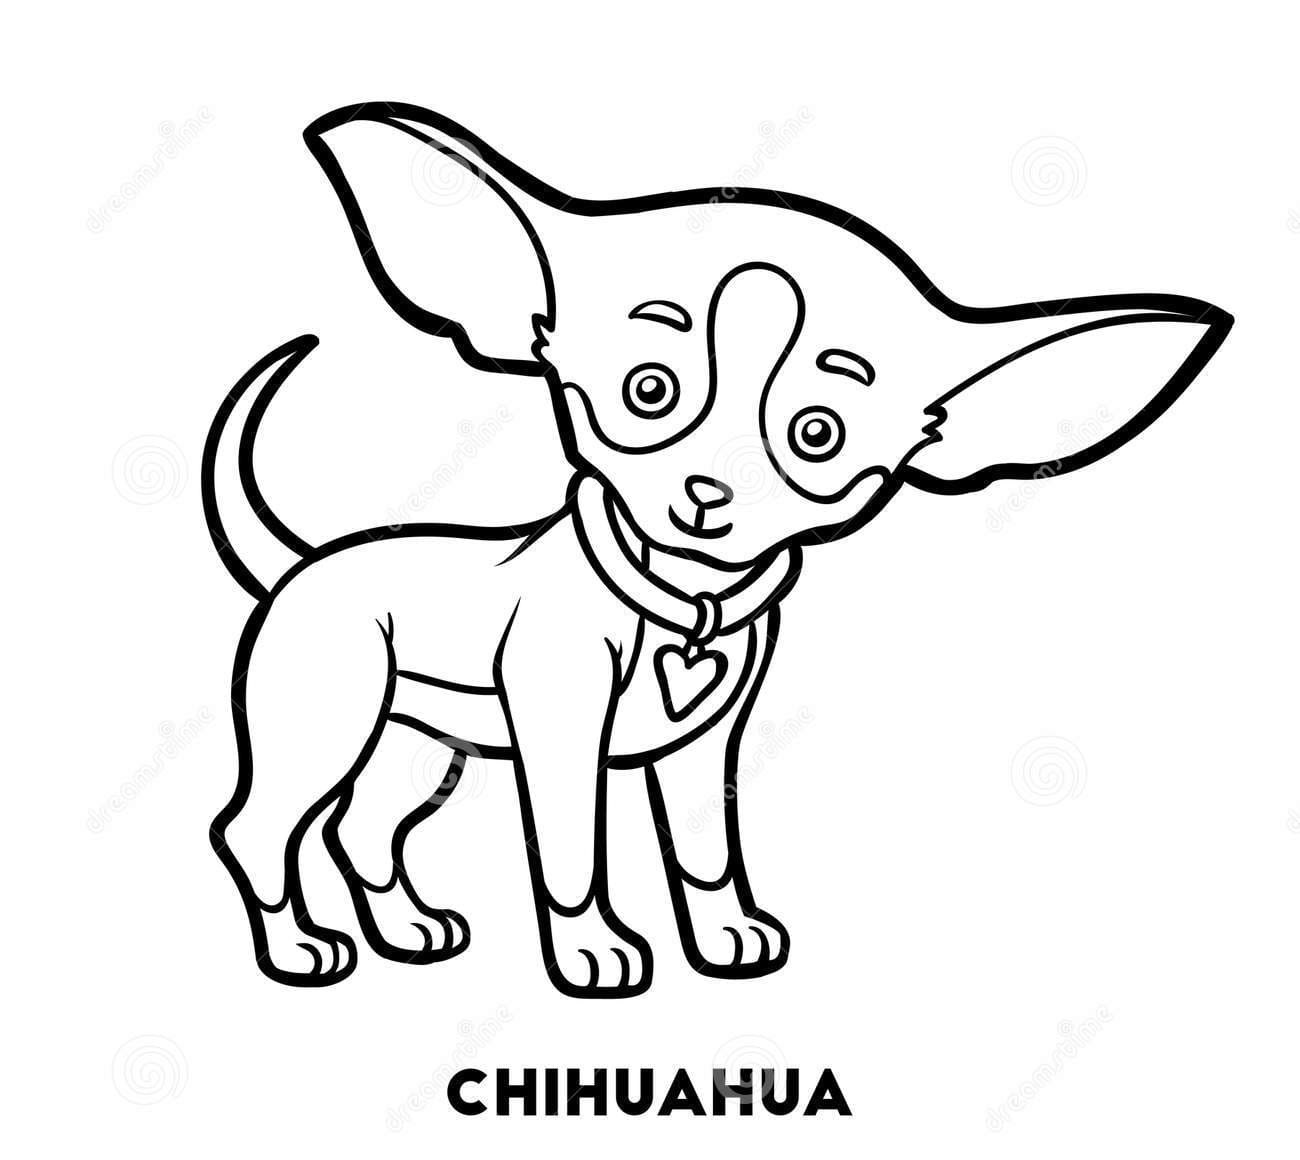 Chihuahua Very Cute